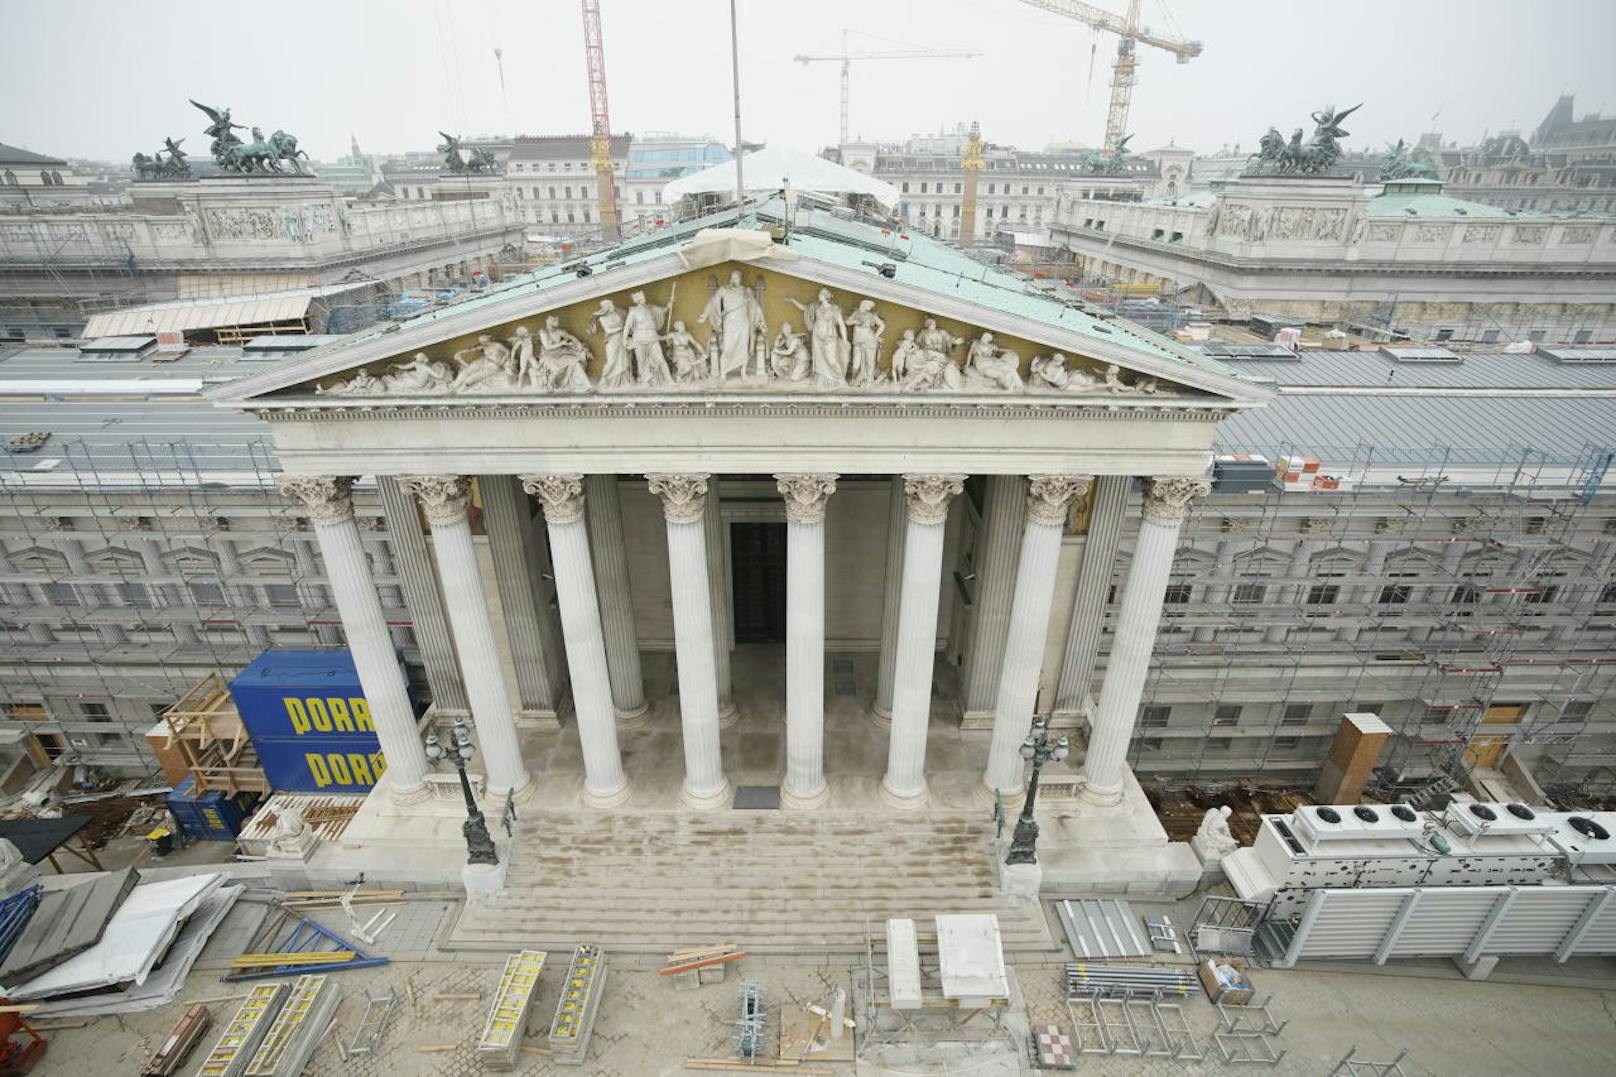 Das Parlament in Wien während der Umbauarbeiten von außen. Viele junge zweifeln an der Demokratie.